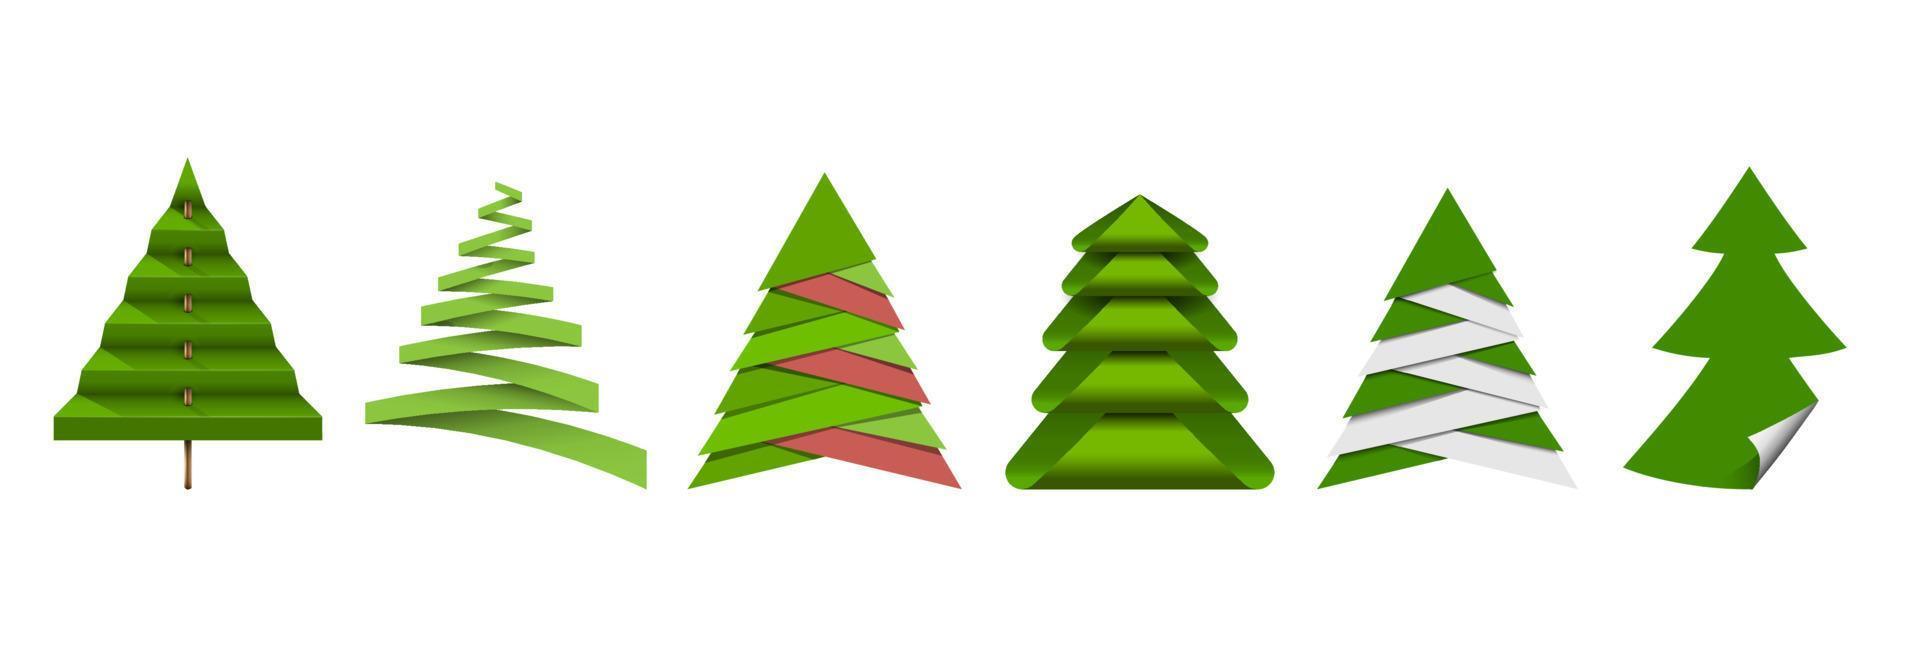 árbol de navidad, diferentes elementos de origami de papel. vector